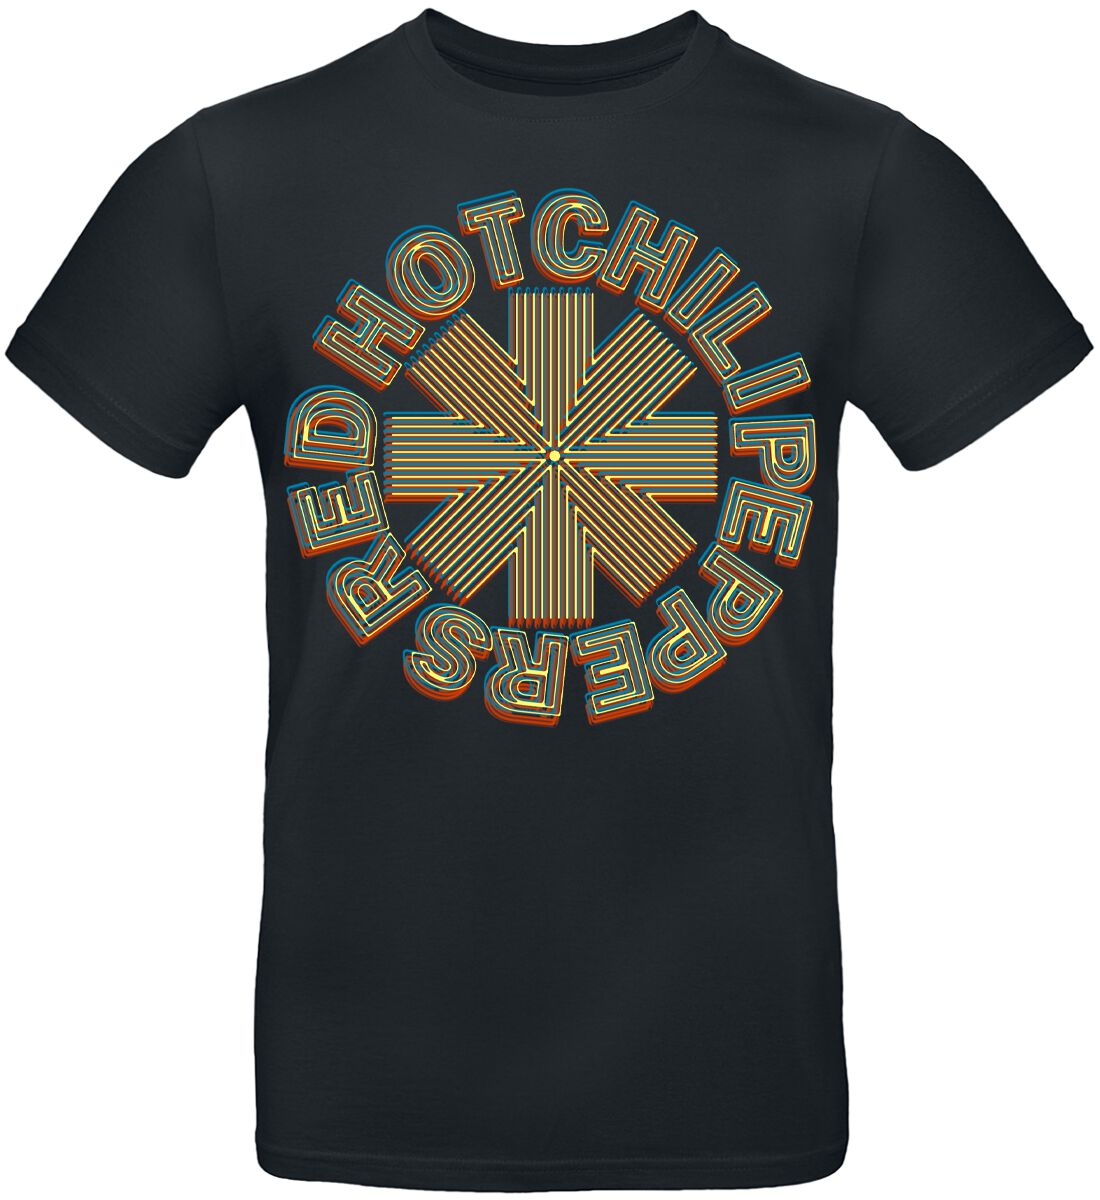 Red Hot Chili Peppers T-Shirt - Abstract Logo - S bis 3XL - für Männer - Größe XL - schwarz  - Lizenziertes Merchandise!